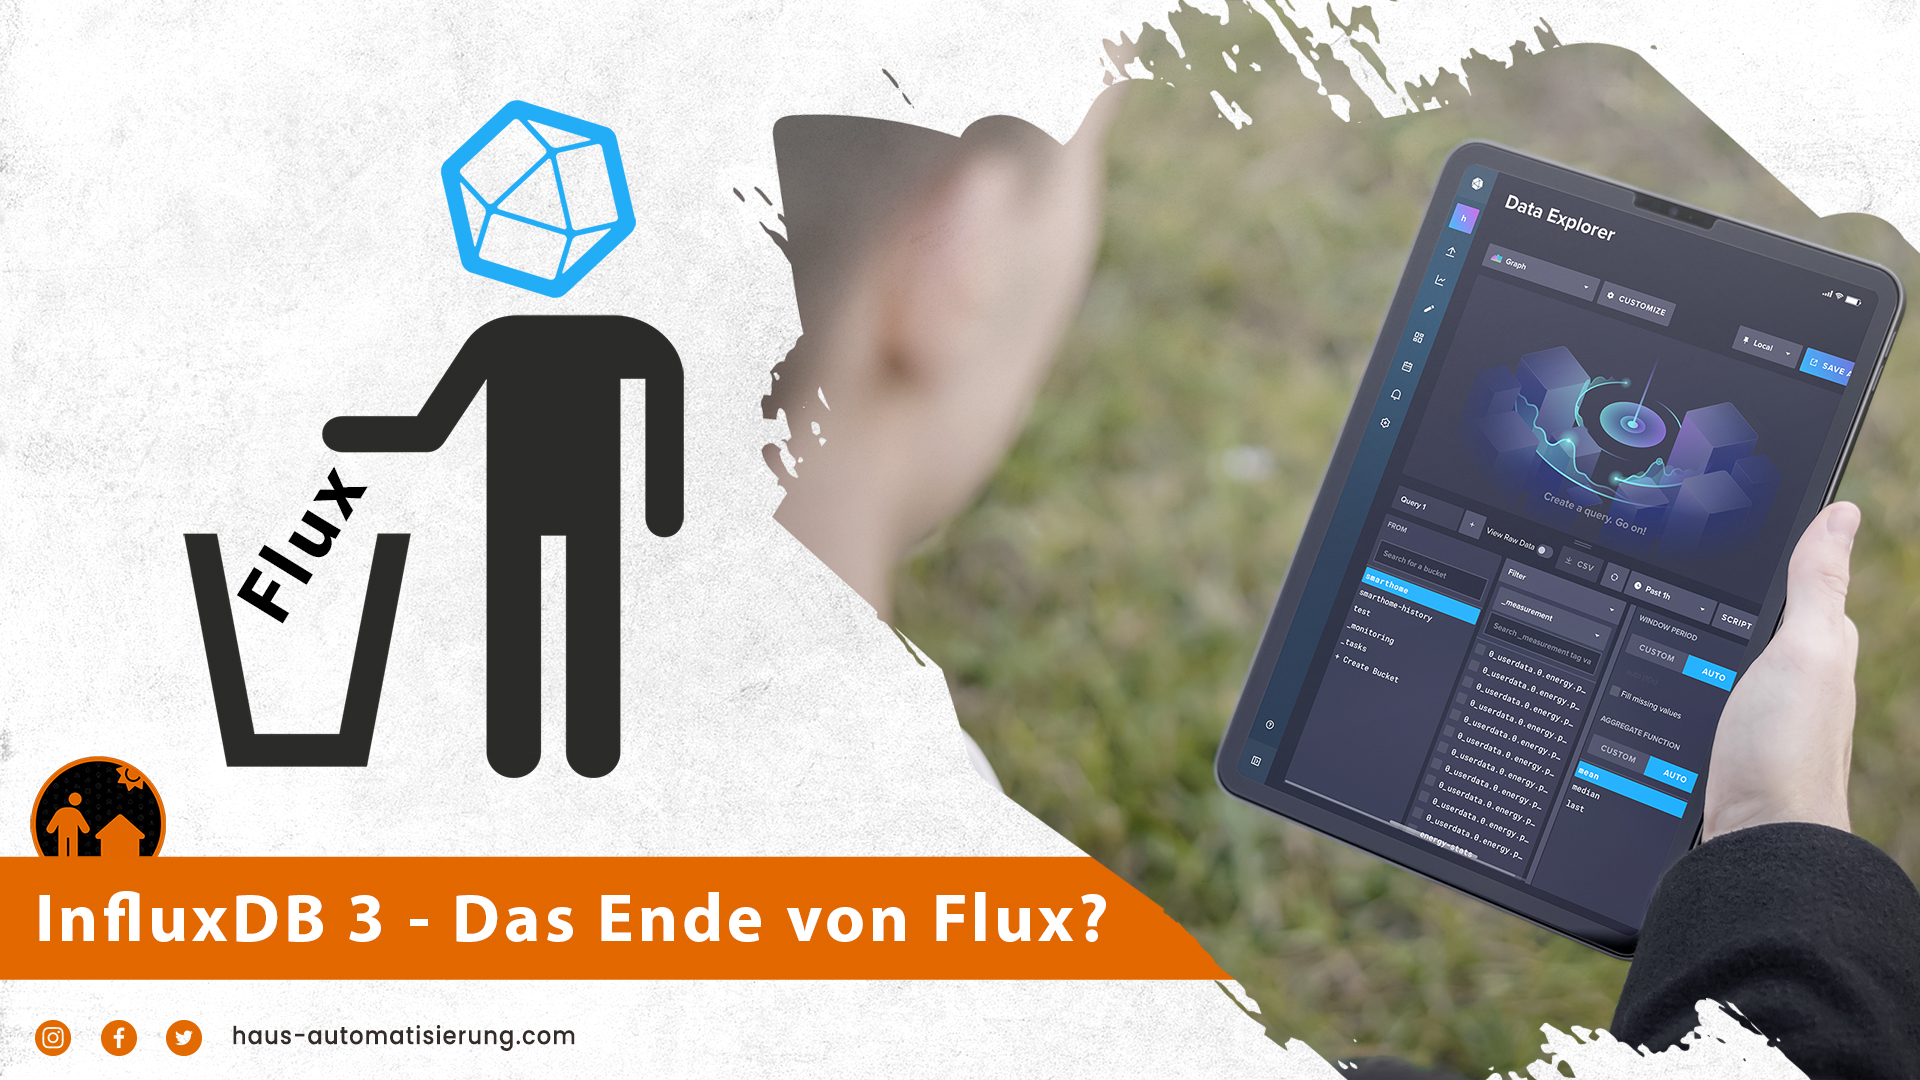 InfluxDB 3.x - Das Ende von Flux?